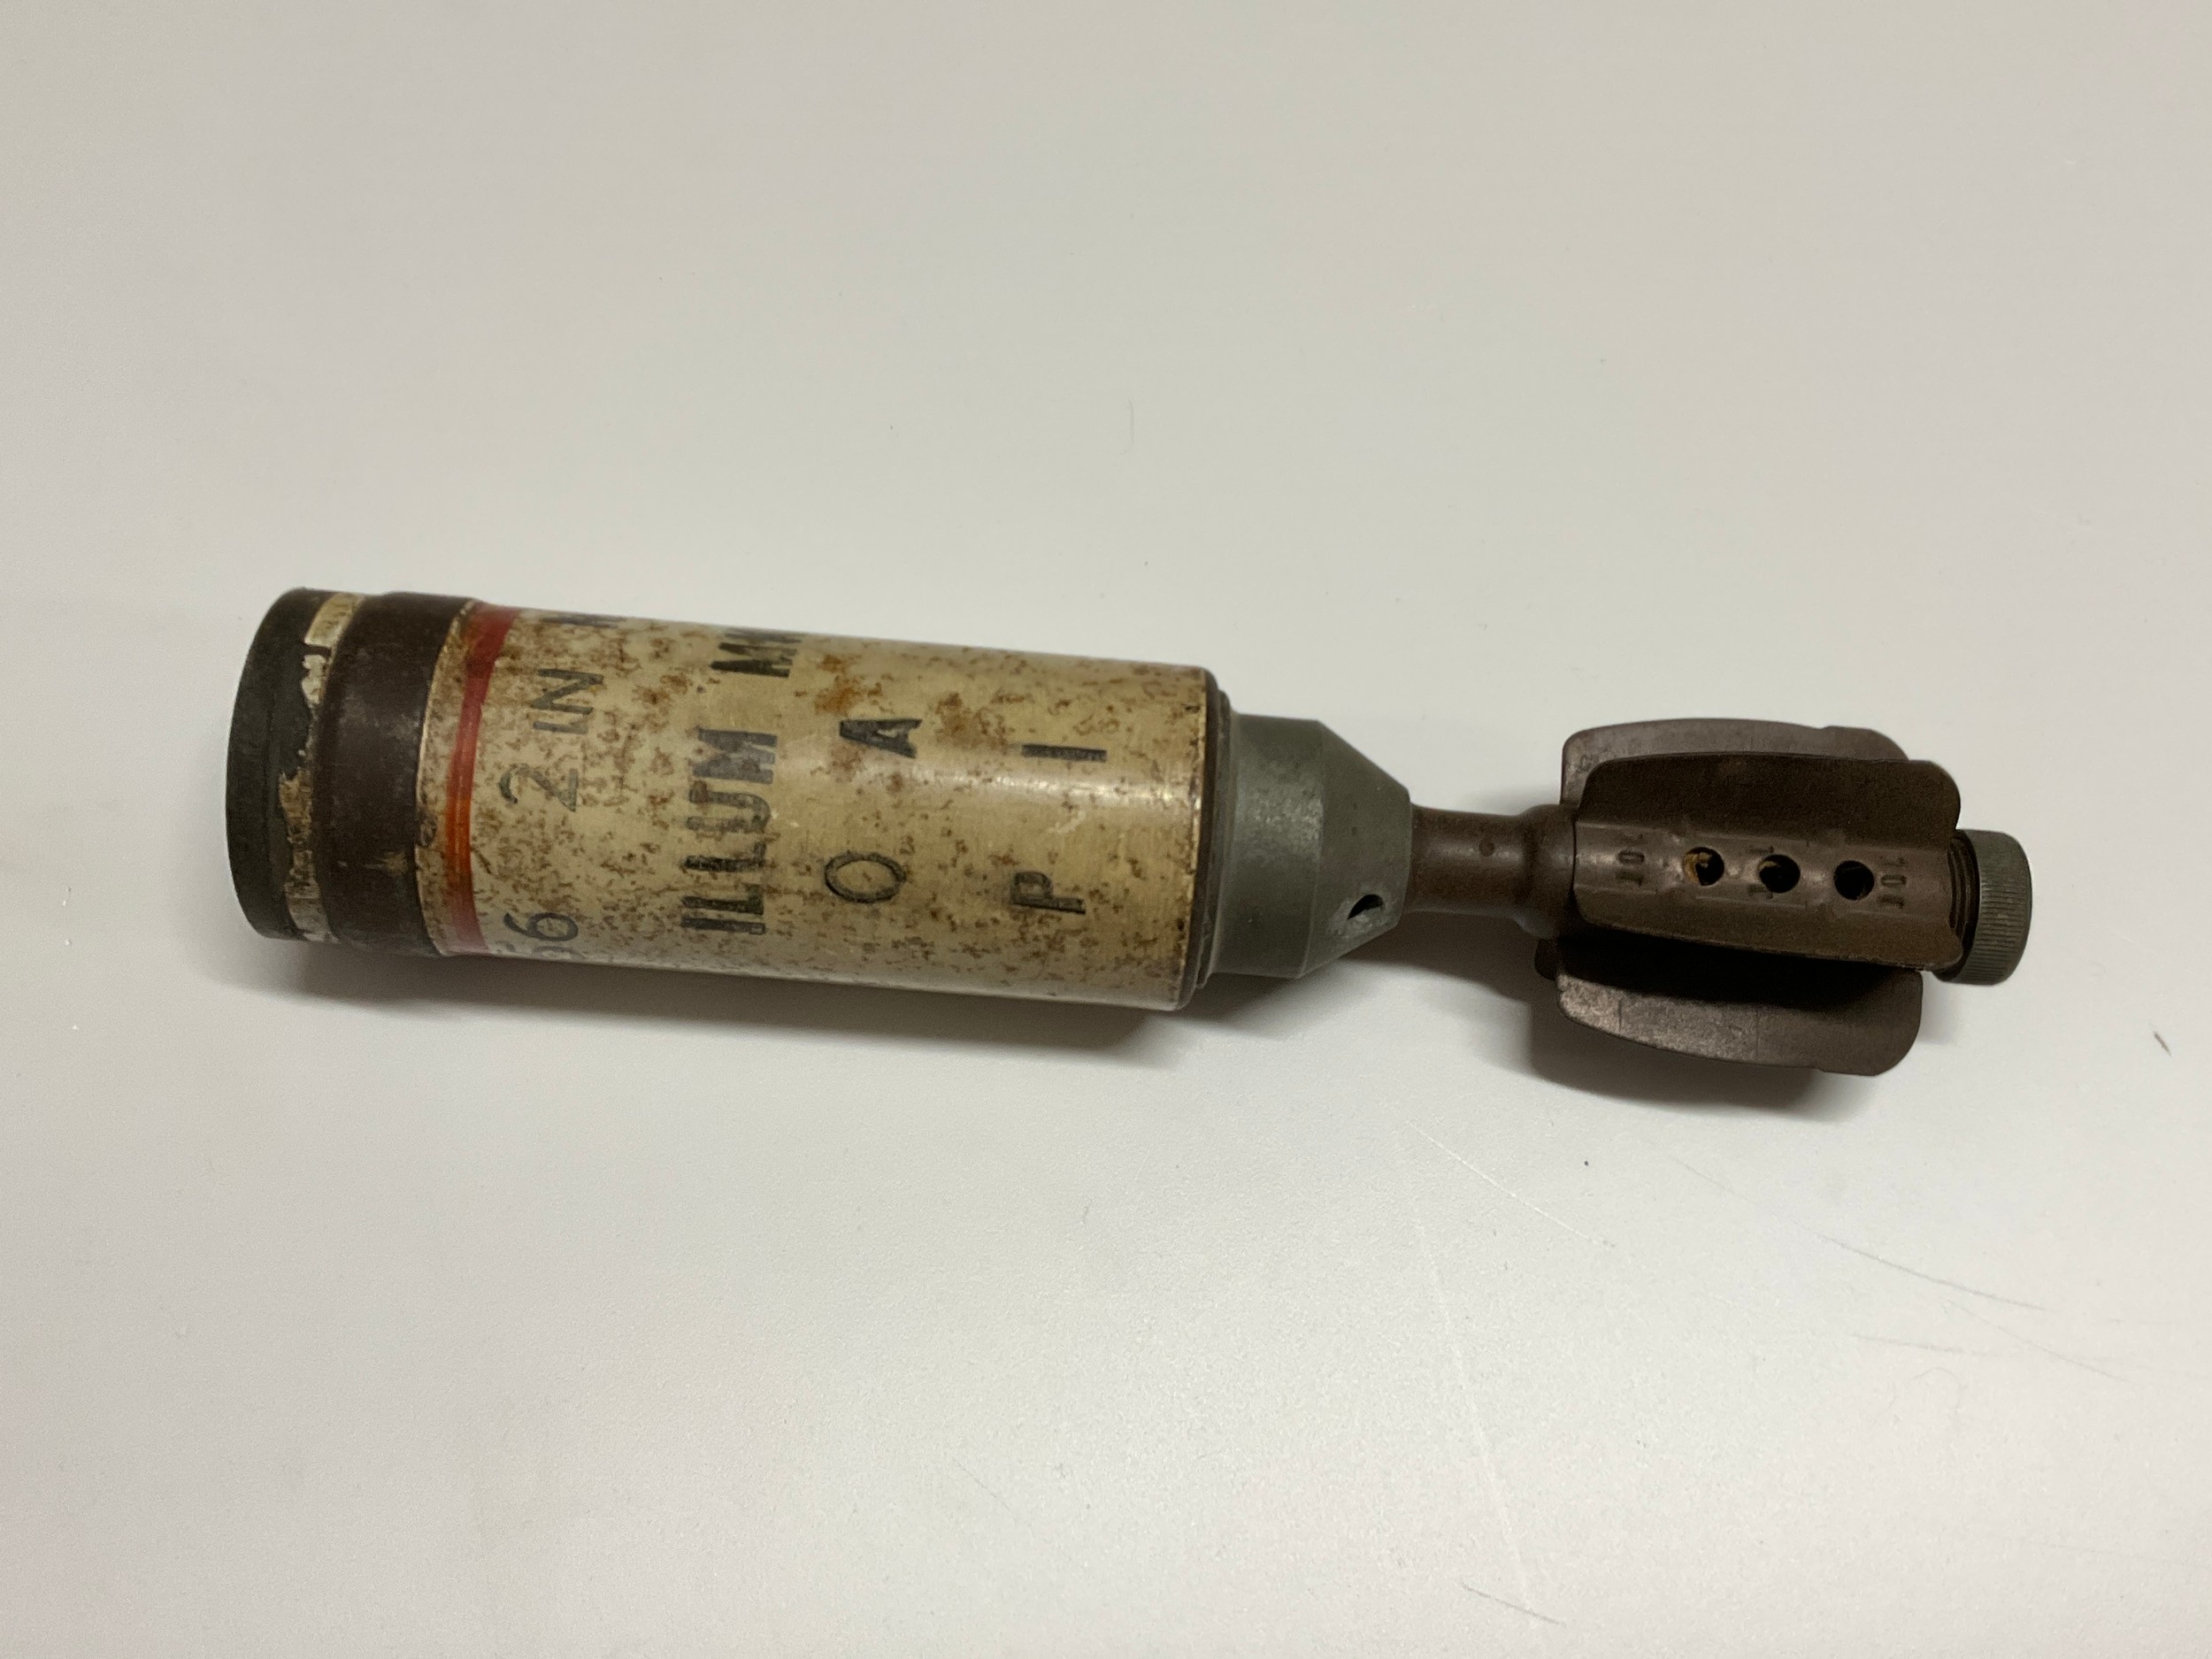 An inert 2" mortar round, dated 11/56